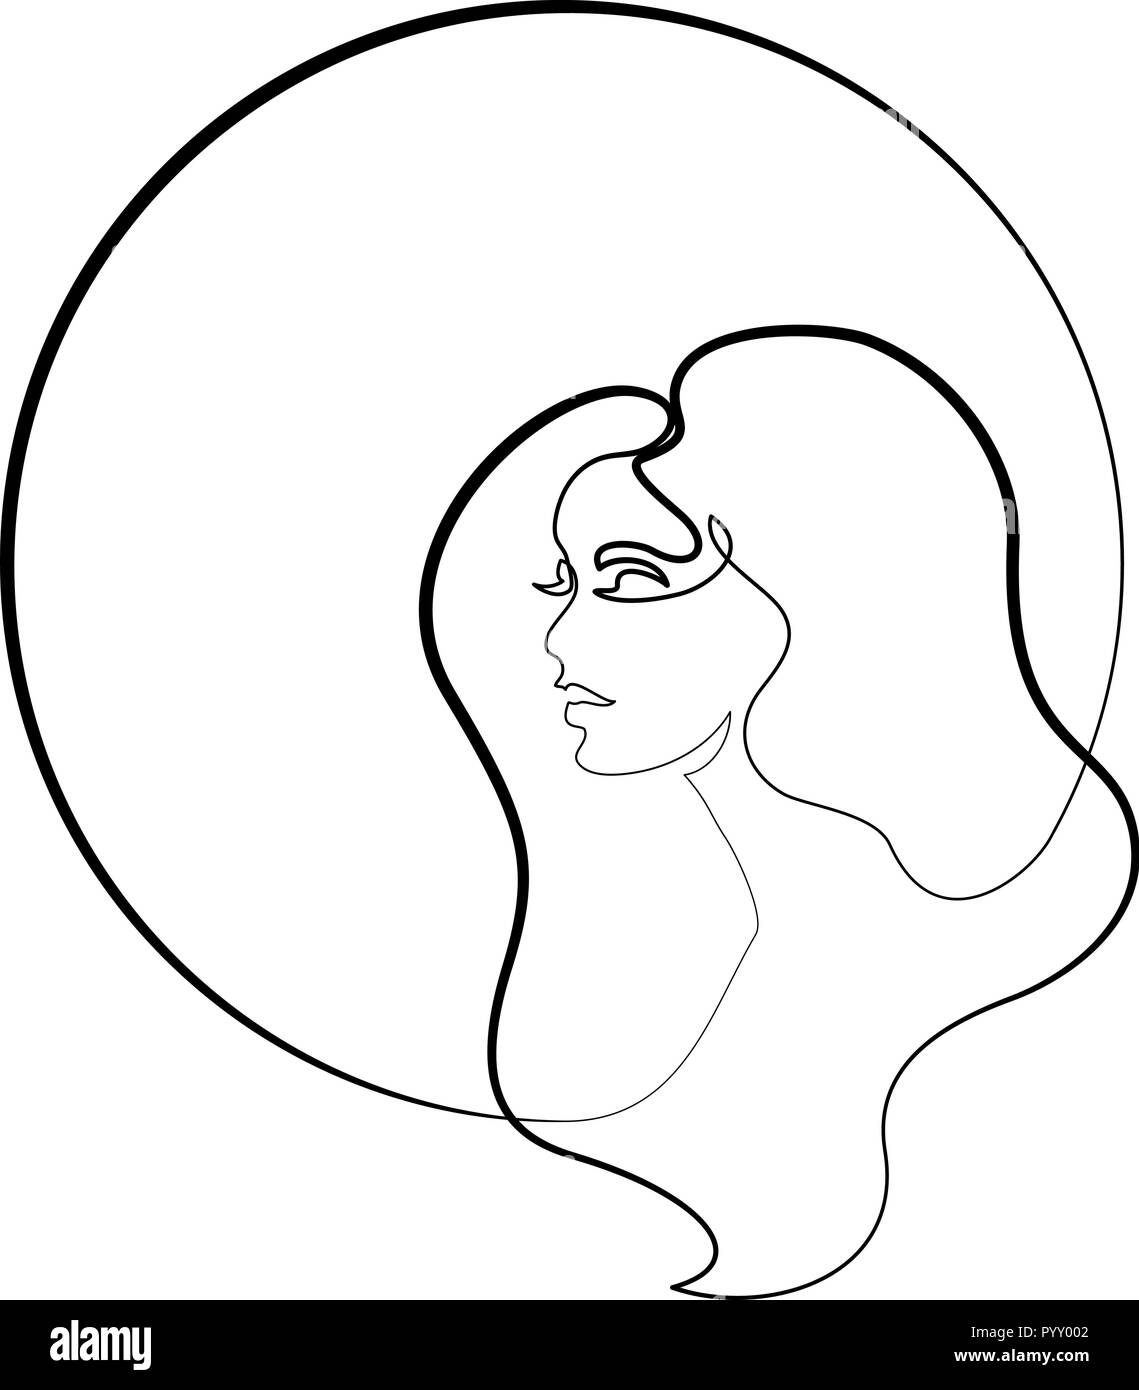 Kontinuierliche eine unterschiedliche Breite Linie zeichnen. Abstrakte Porträt der hübsche junge Frau mit schönen Haar in Umlauf. Vector Illustration Stock Vektor